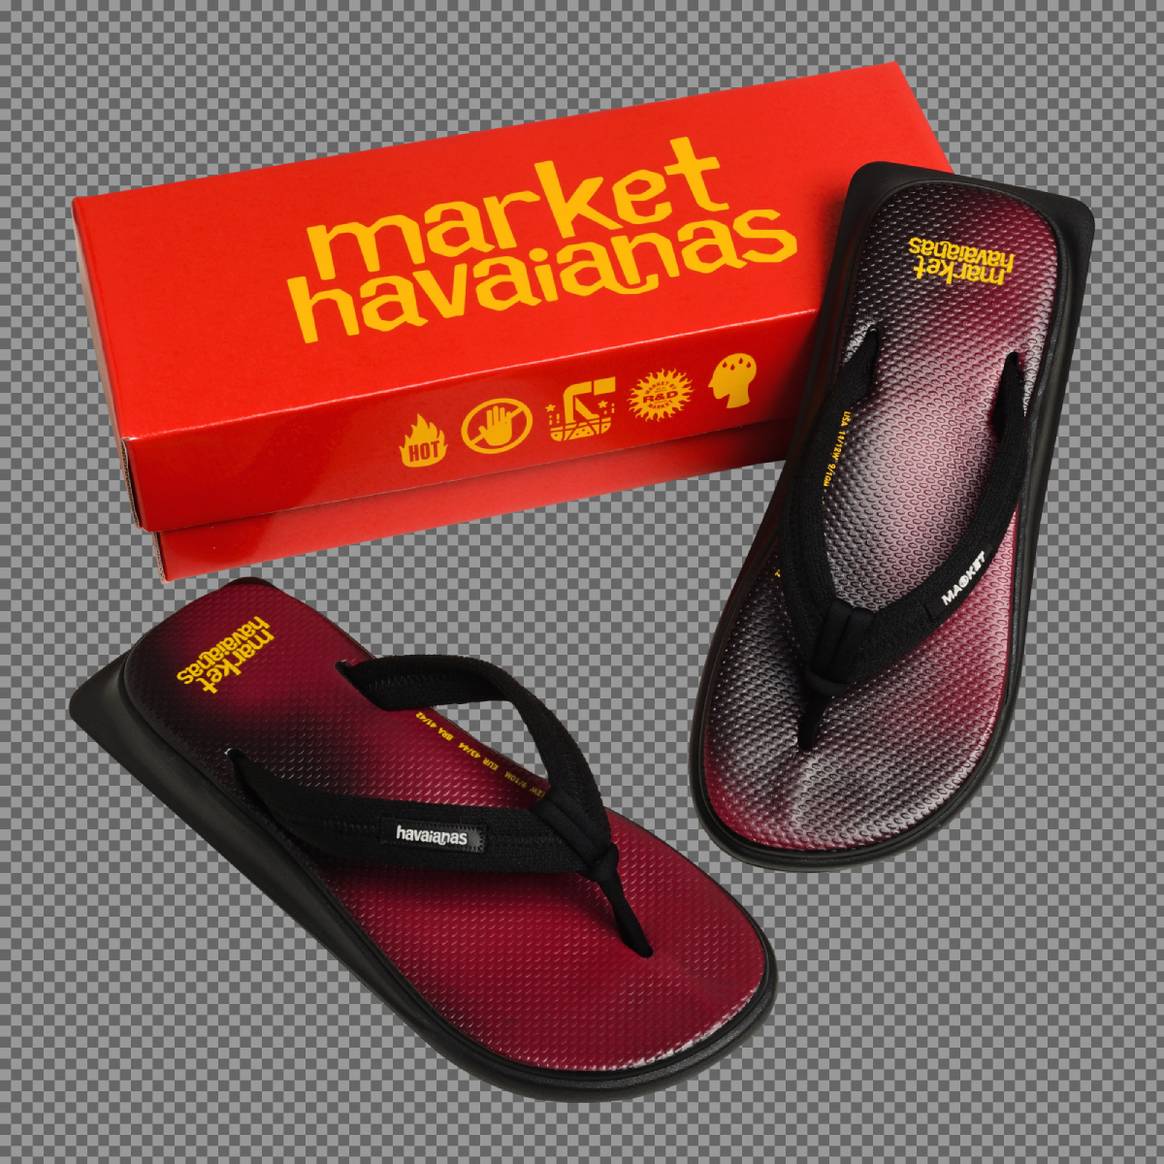 Havaianas lança collab com Market em sandálias com tecnologia termocrômica